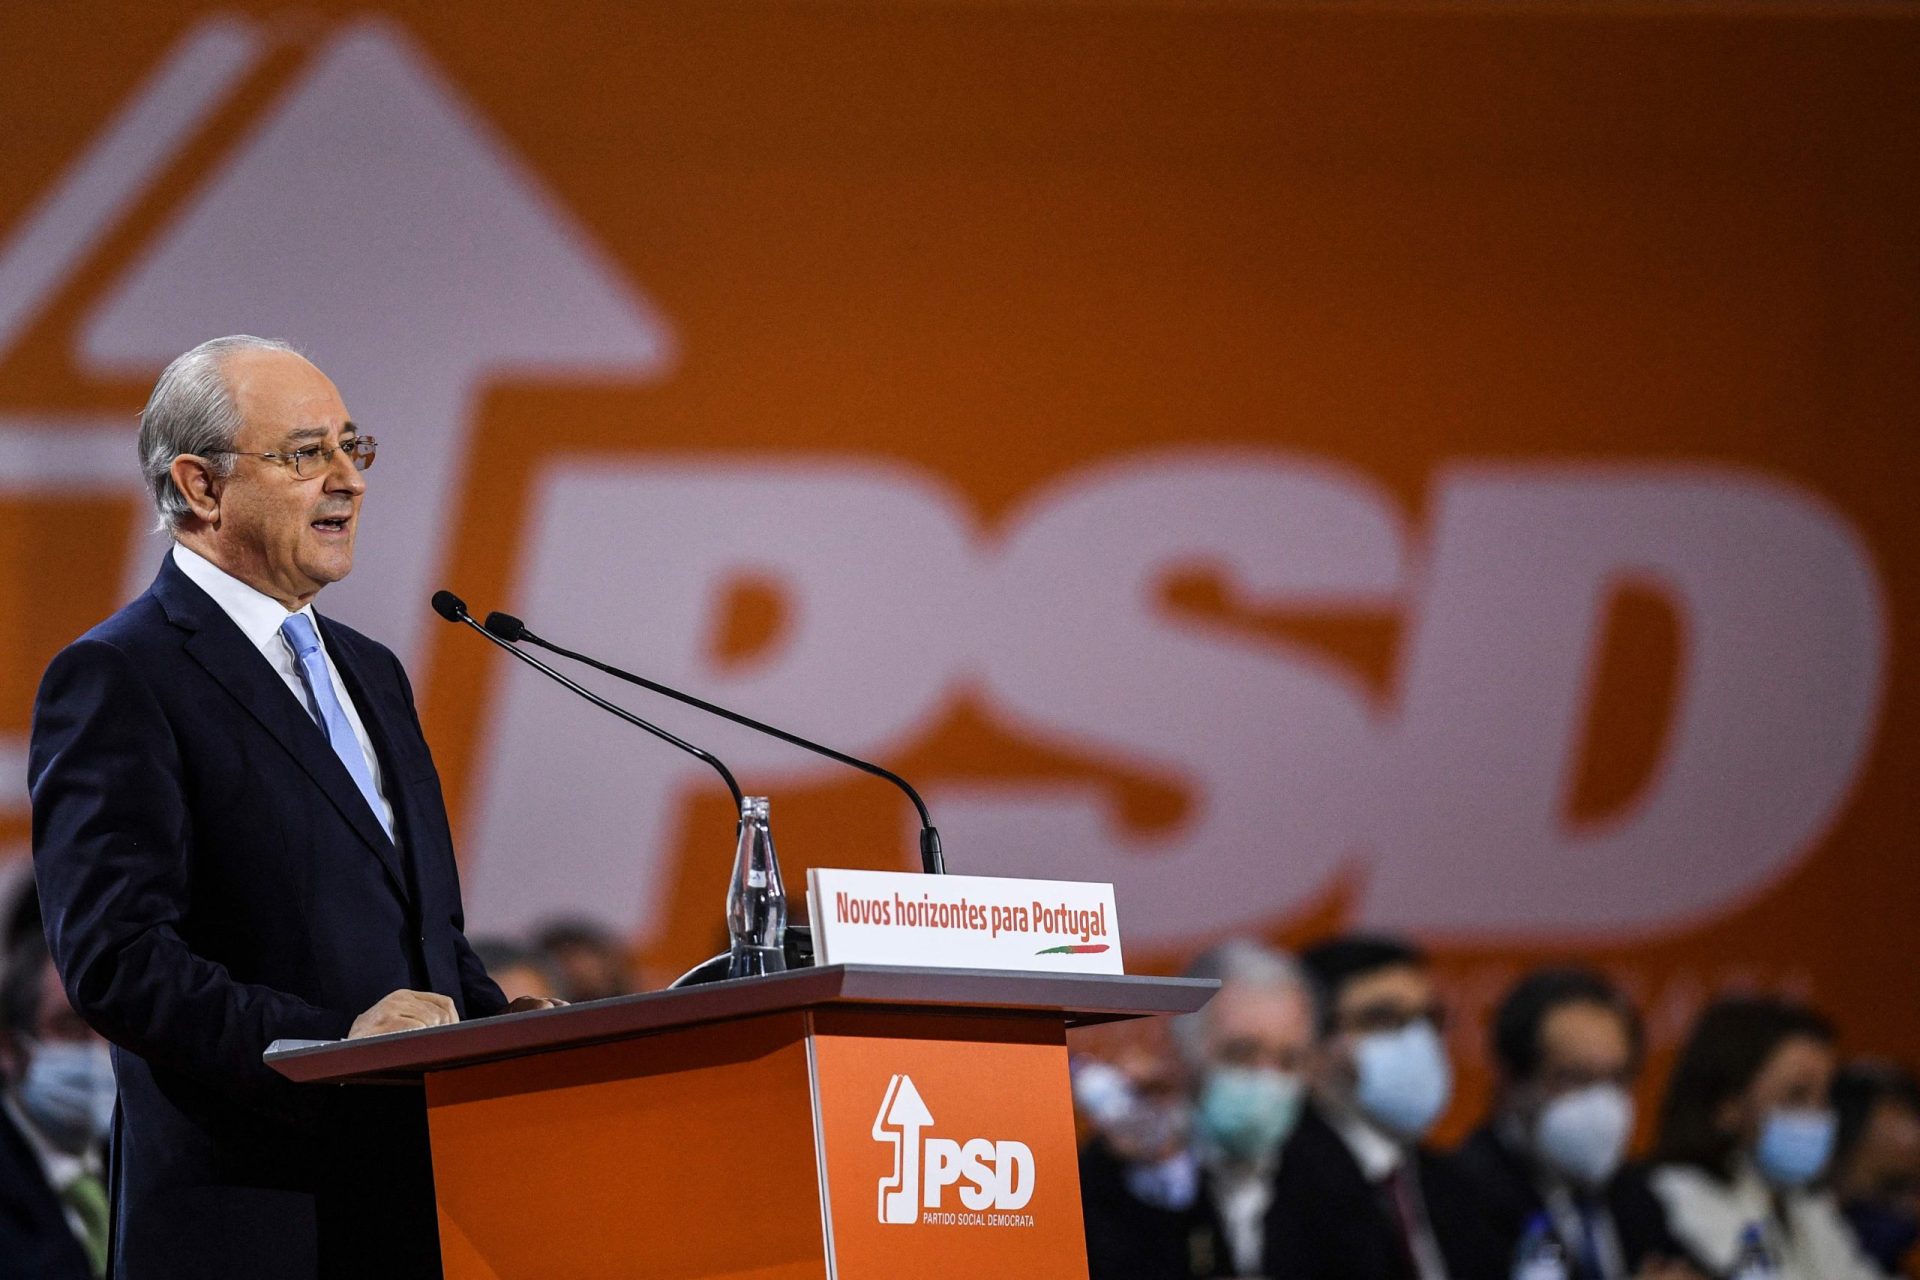 PSD precisa de “tranquilidade” e “serenidade” até às próximas eleições diretas, diz Rui Rio